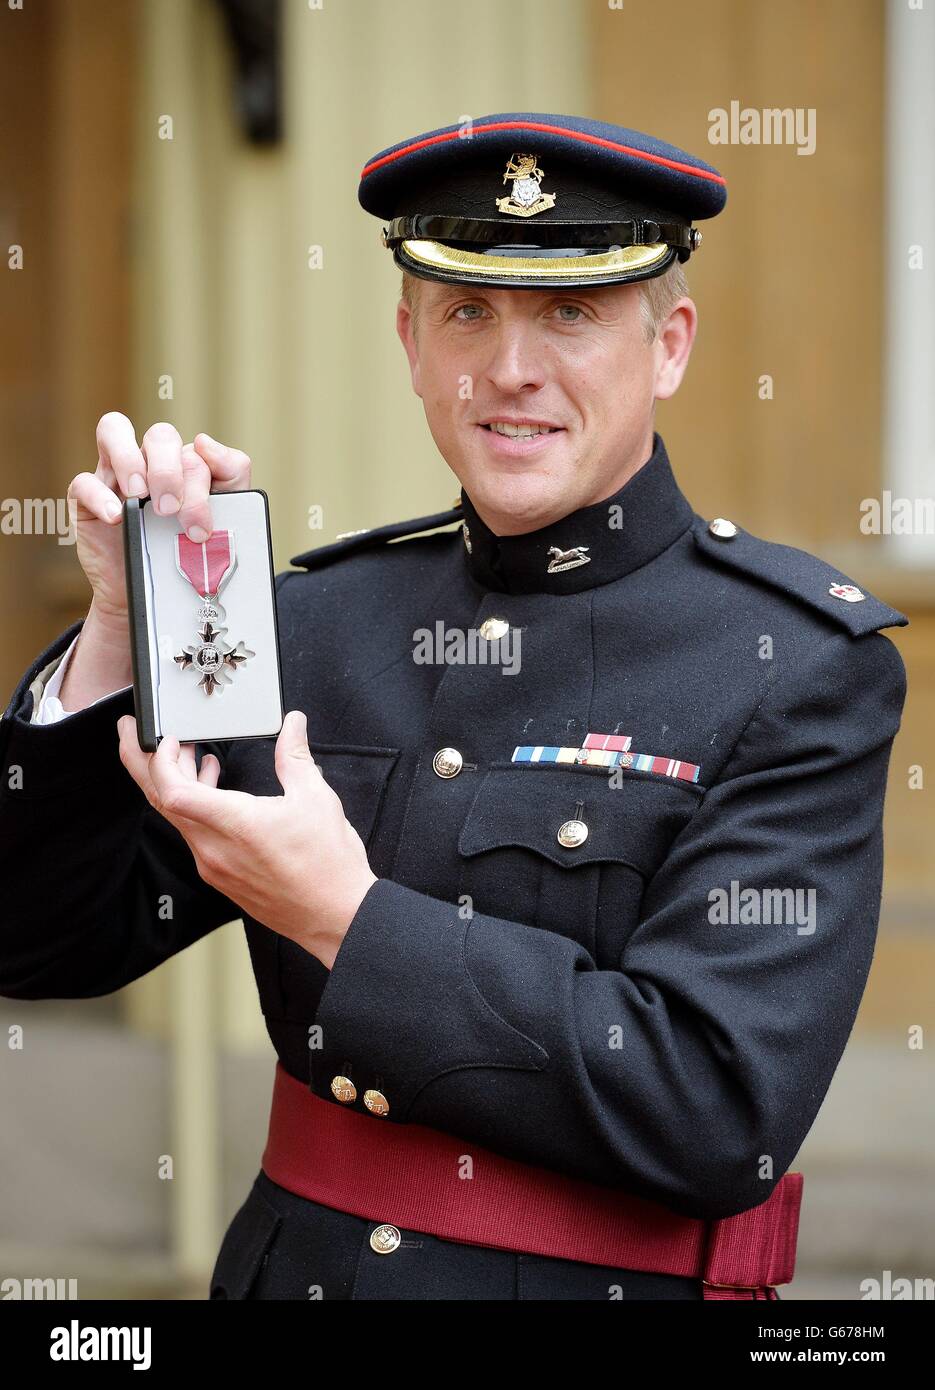 Le Major Edward Colver de la Compagnie OC Corunna, 3e BN du Yorkshire Regiment, détient sa médaille MBE, après avoir reçu le prix du Prince de Galles lors d'une cérémonie d'investiture au Palais de Buckingham, dans le centre de Londres. Banque D'Images